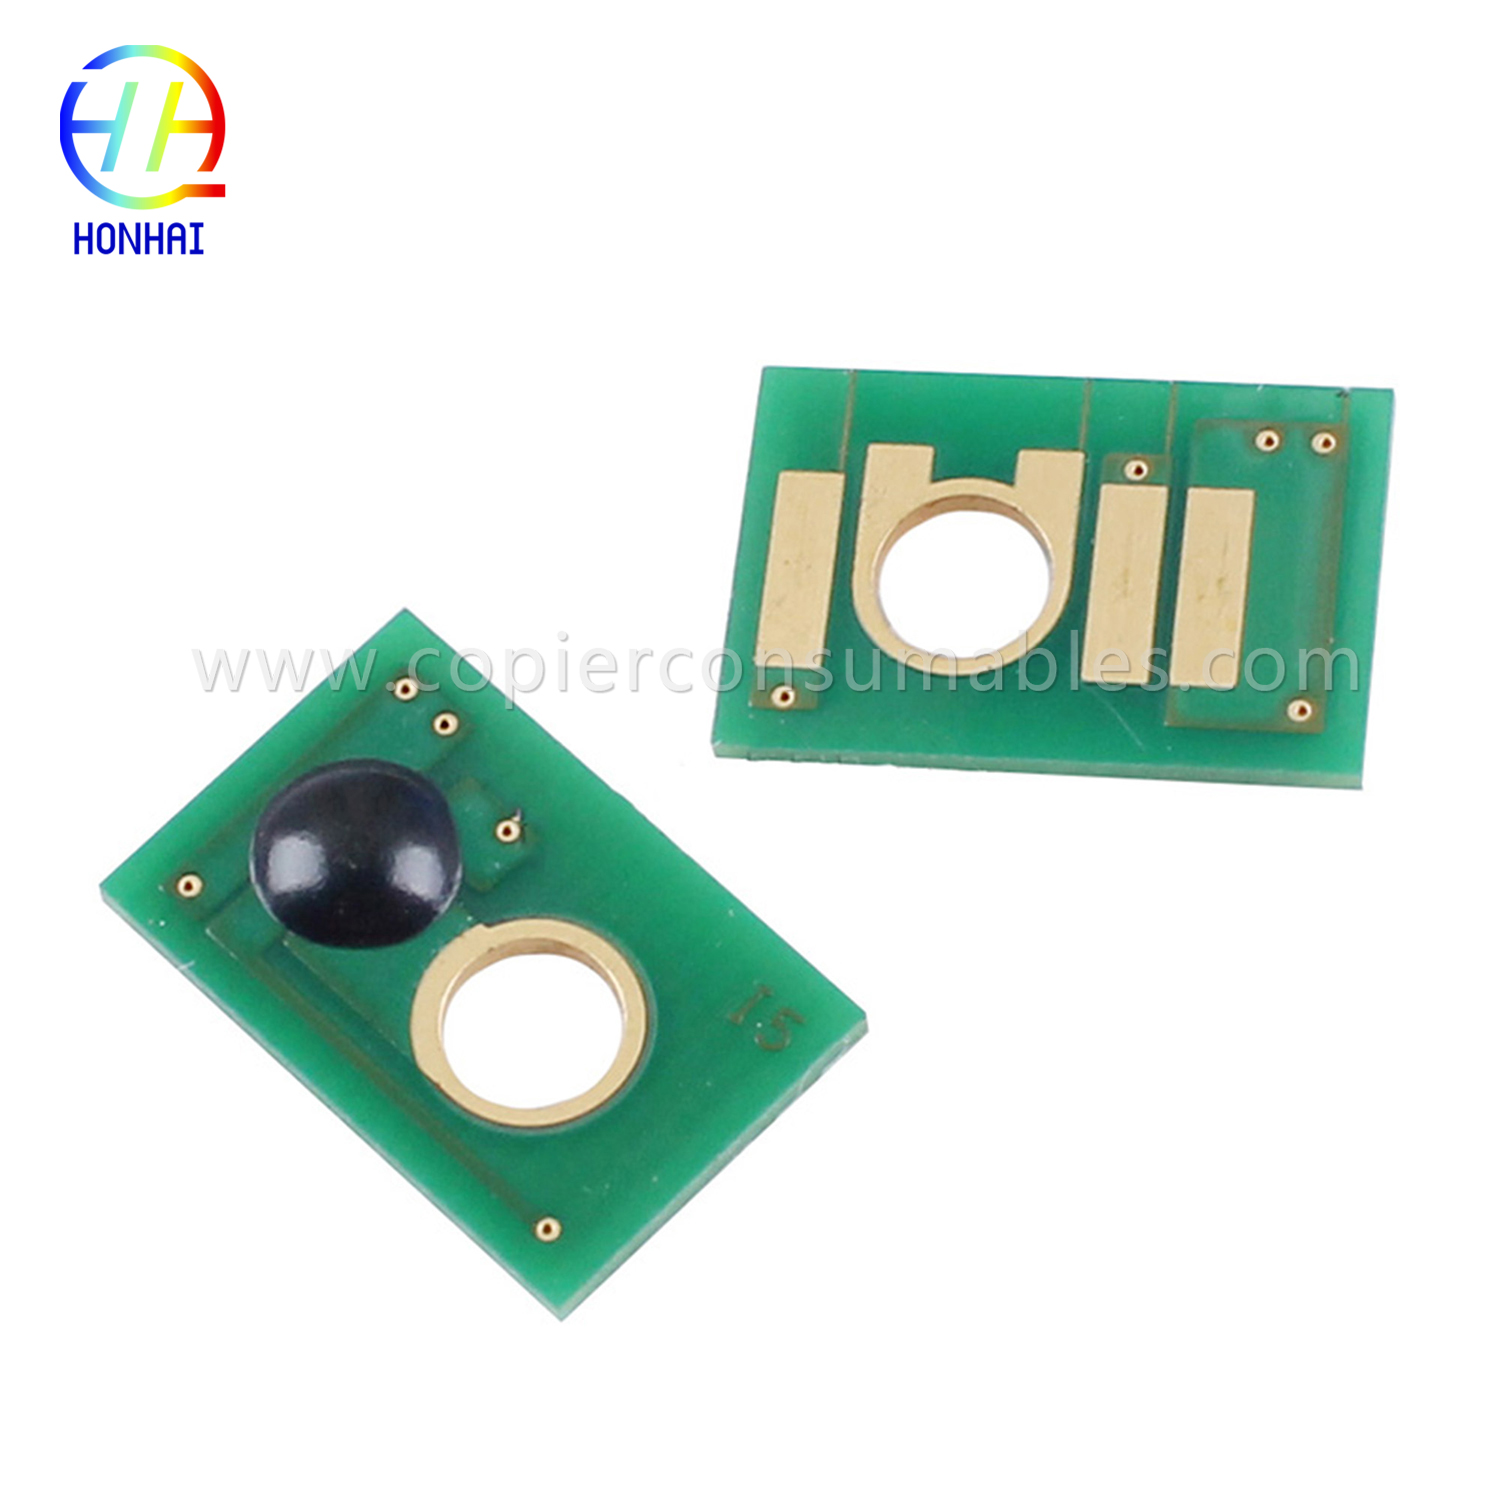 Toner Cartridge Chip for Ricoh Aficio MP C3002 3502 (841735~841738 841647~841650)